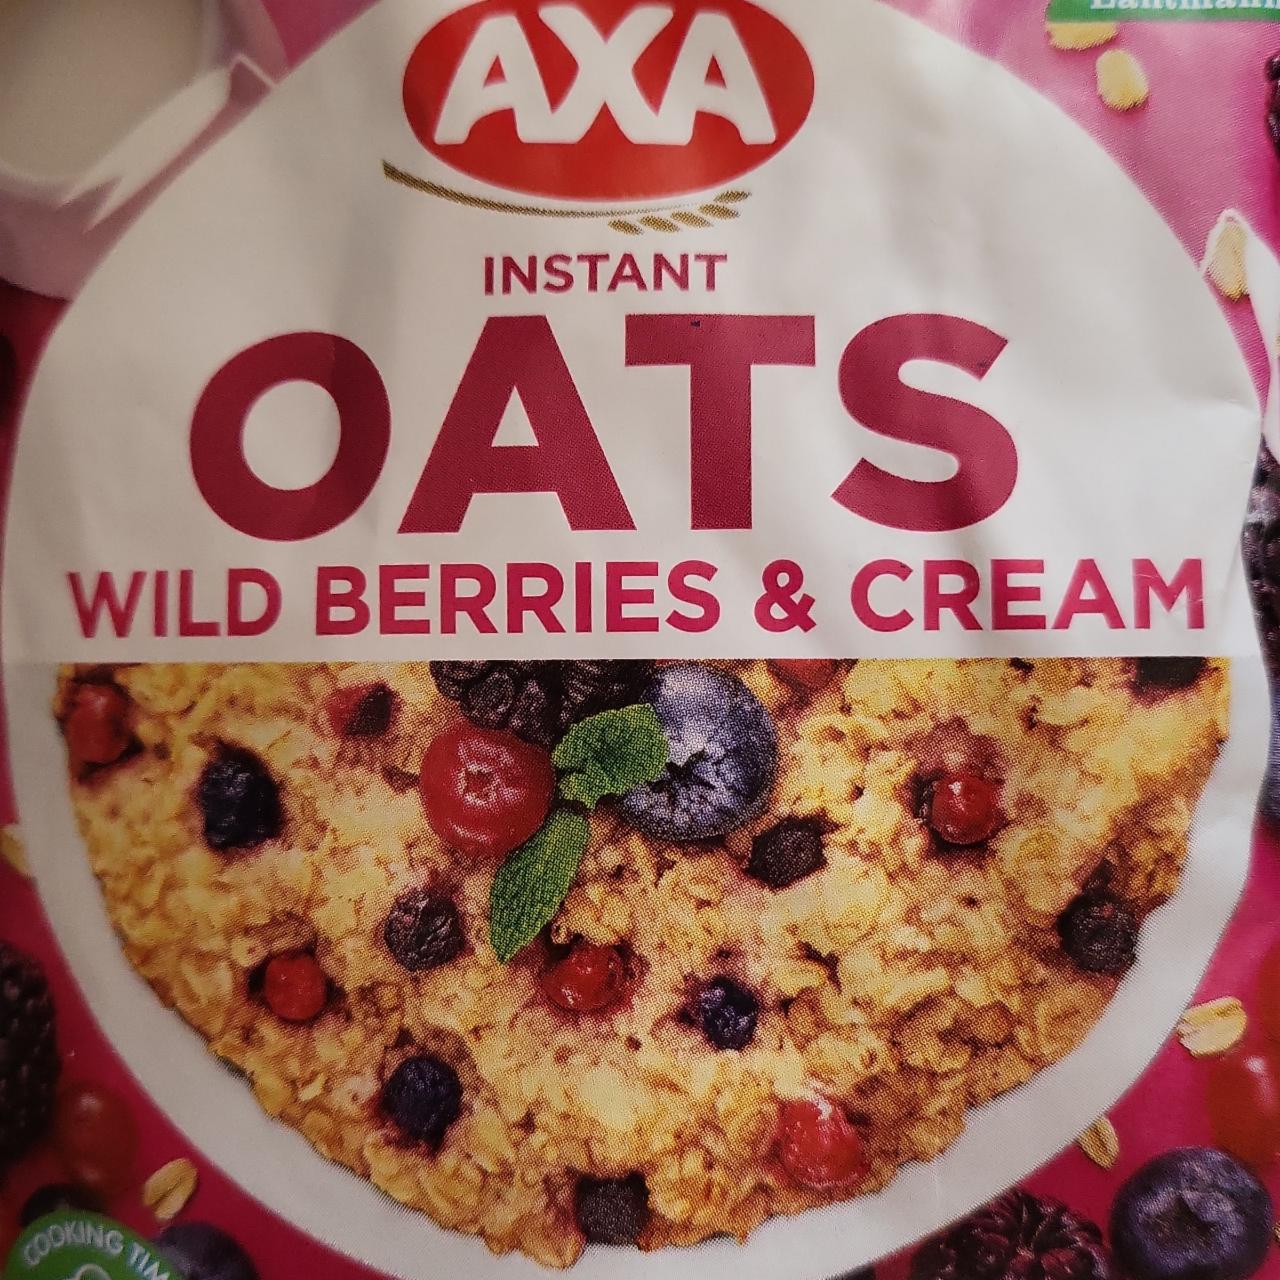 Фото - Каша овсяная со сливками и лесными ягодами Wild Berries & Cream Oats Axa